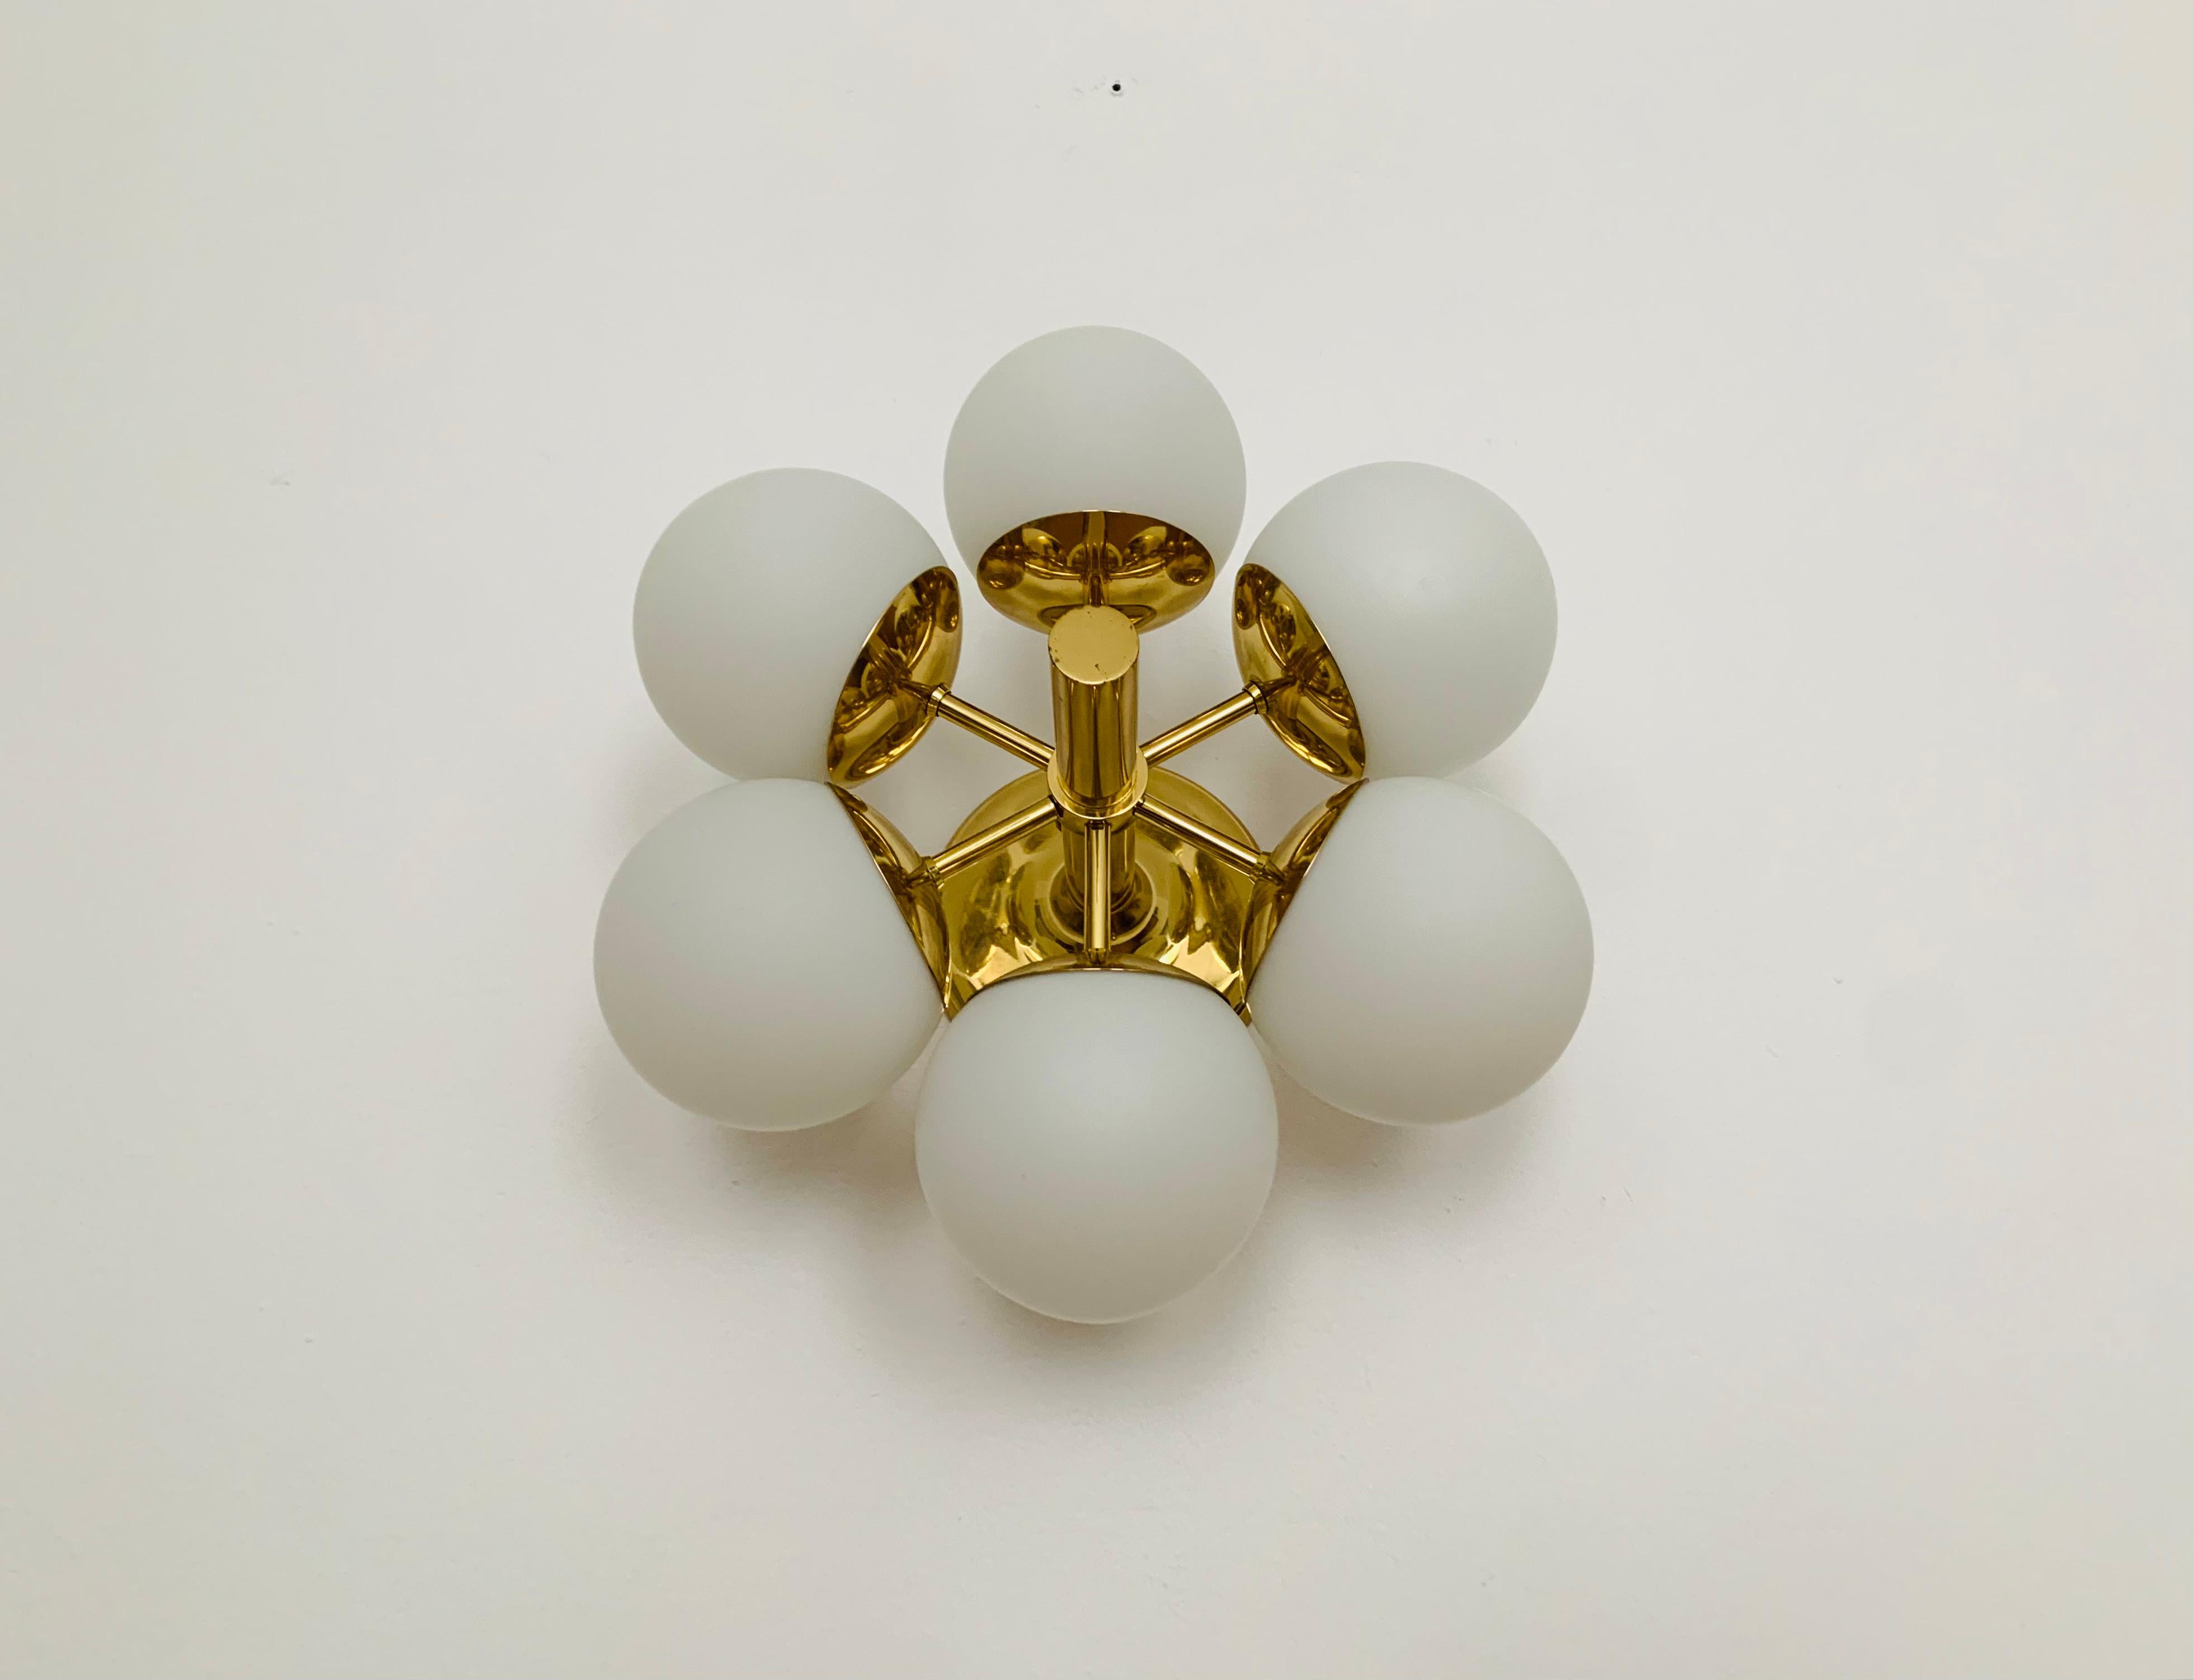 Merveilleux plafonnier Sputnik des années 1960.
Les abat-jour en verre opale diffusent une lumière agréable.
La lampe a une finition de très haute qualité.
Fantastique design contemporain.

Fabricant : Kaiser Leuchten/ Kaiser Idell

Condit :

Très